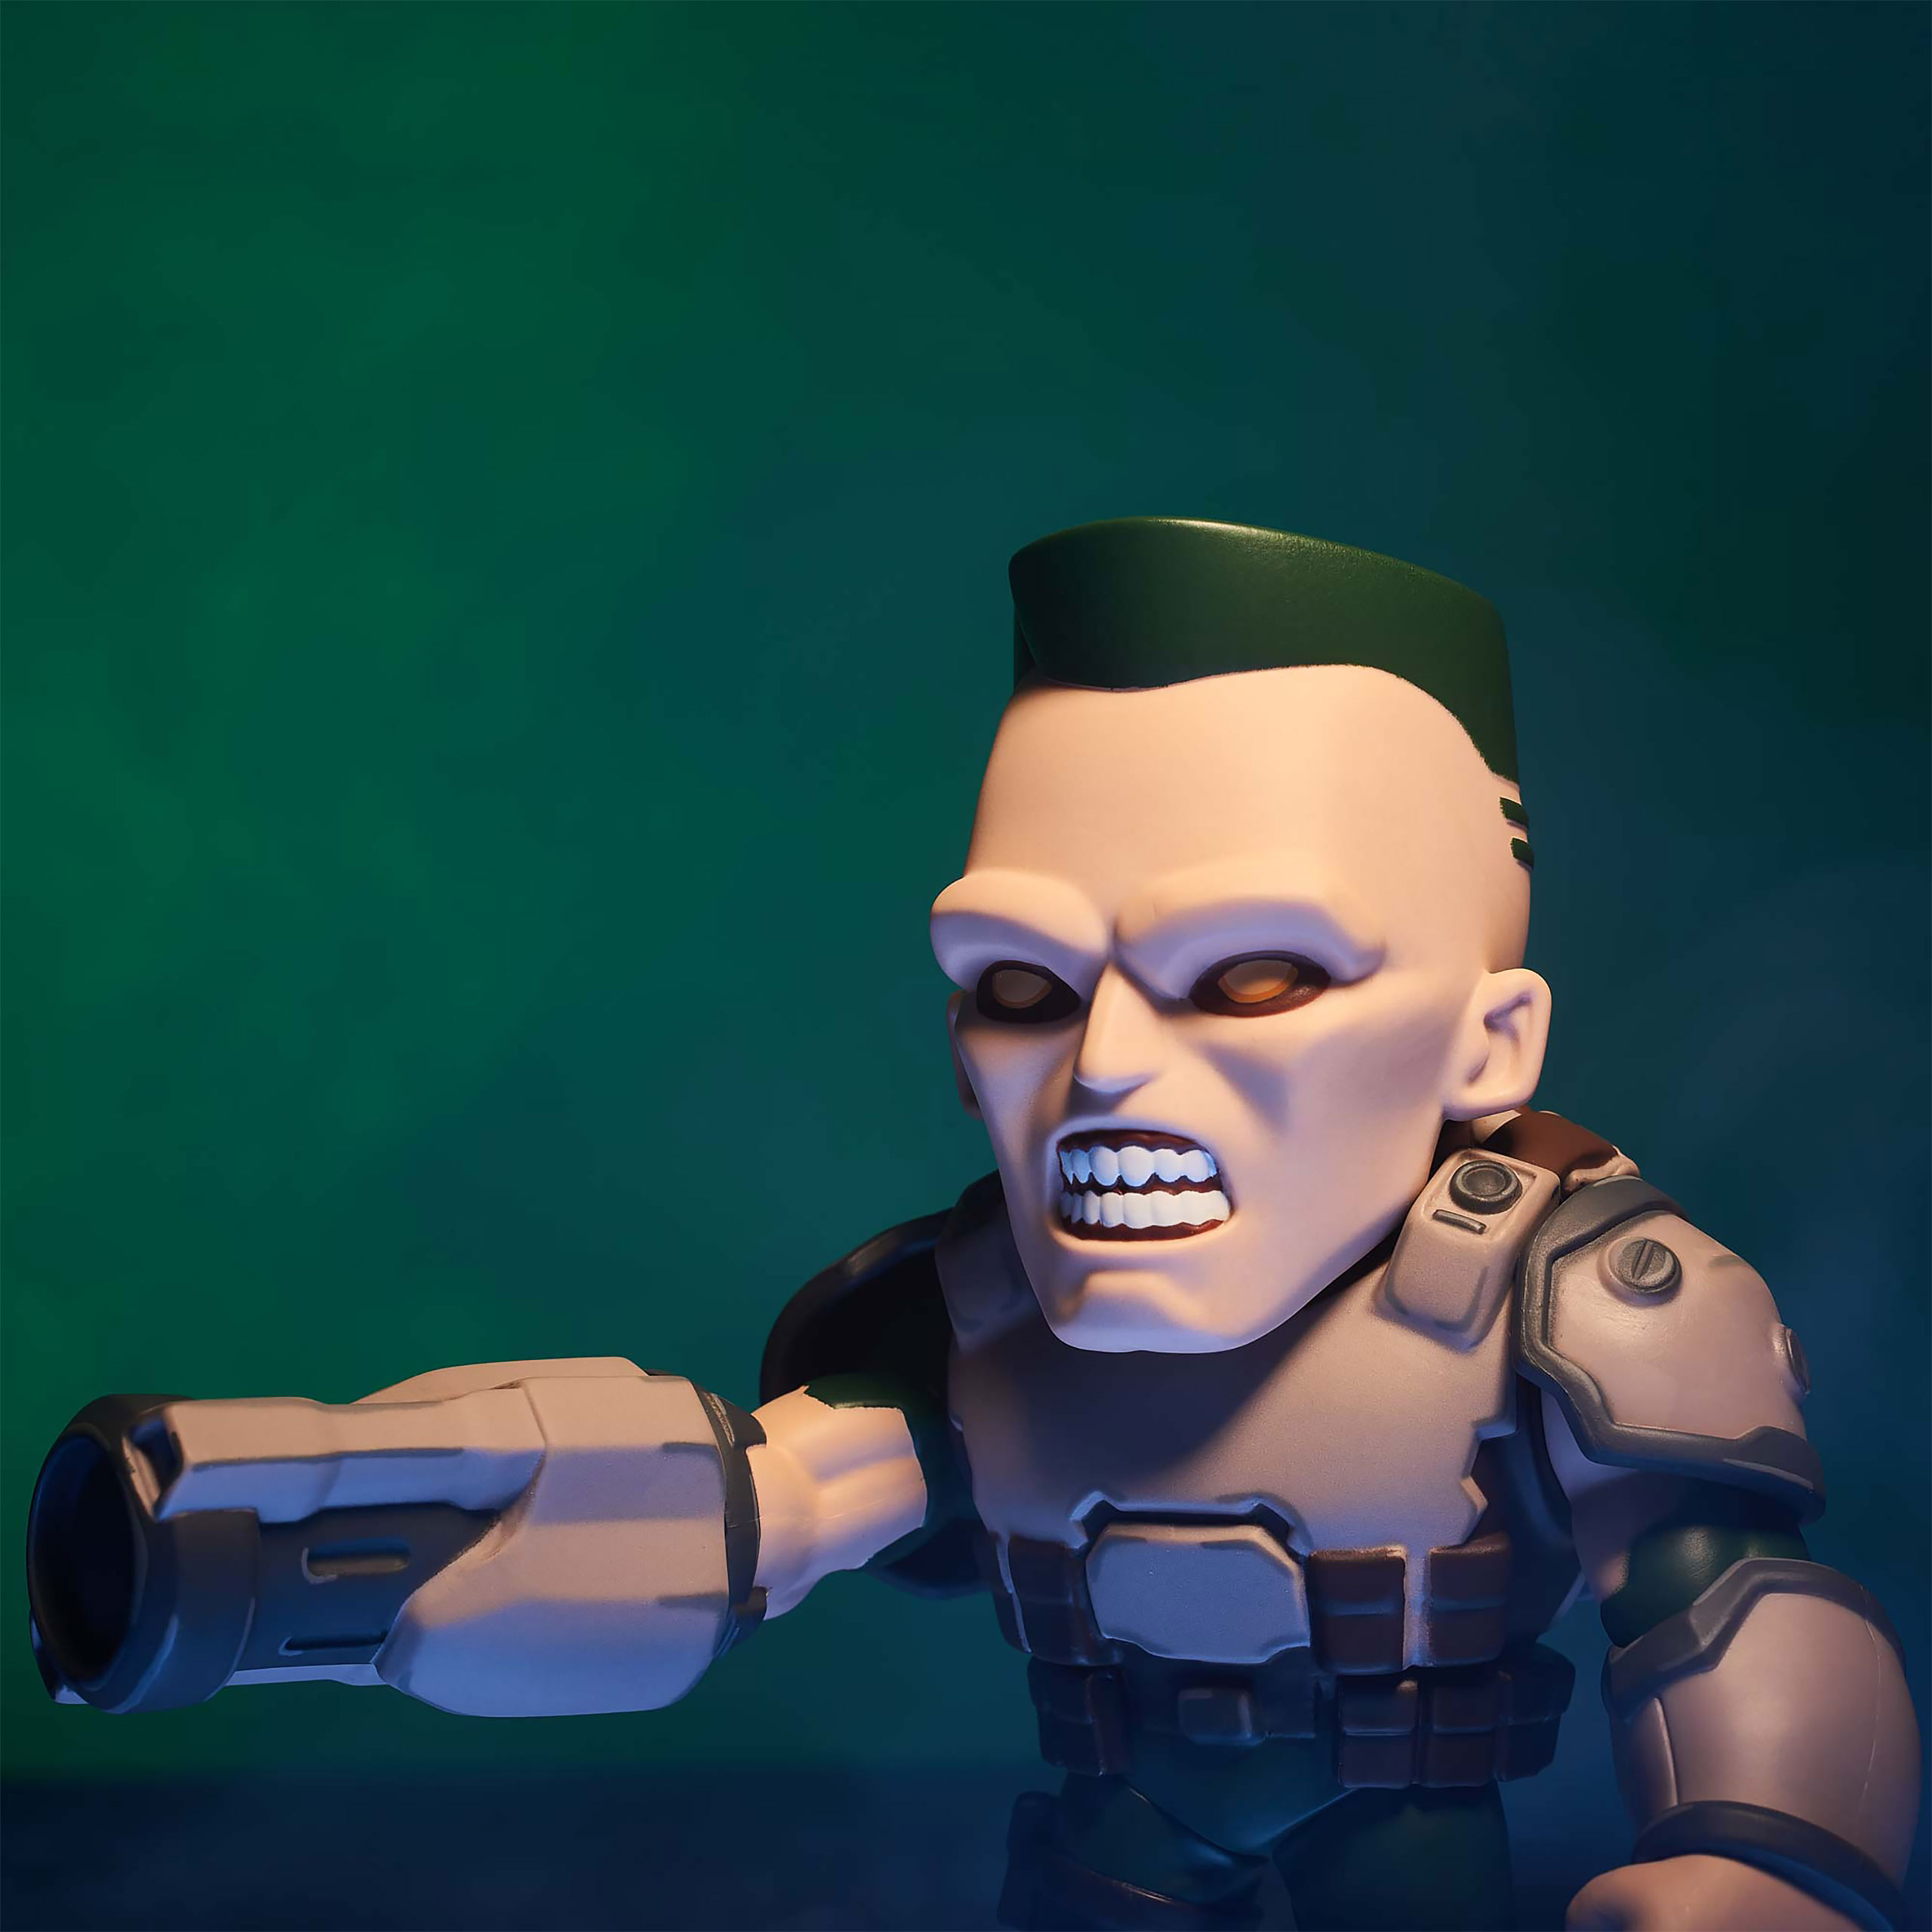 Doom - Soldier Action Figure